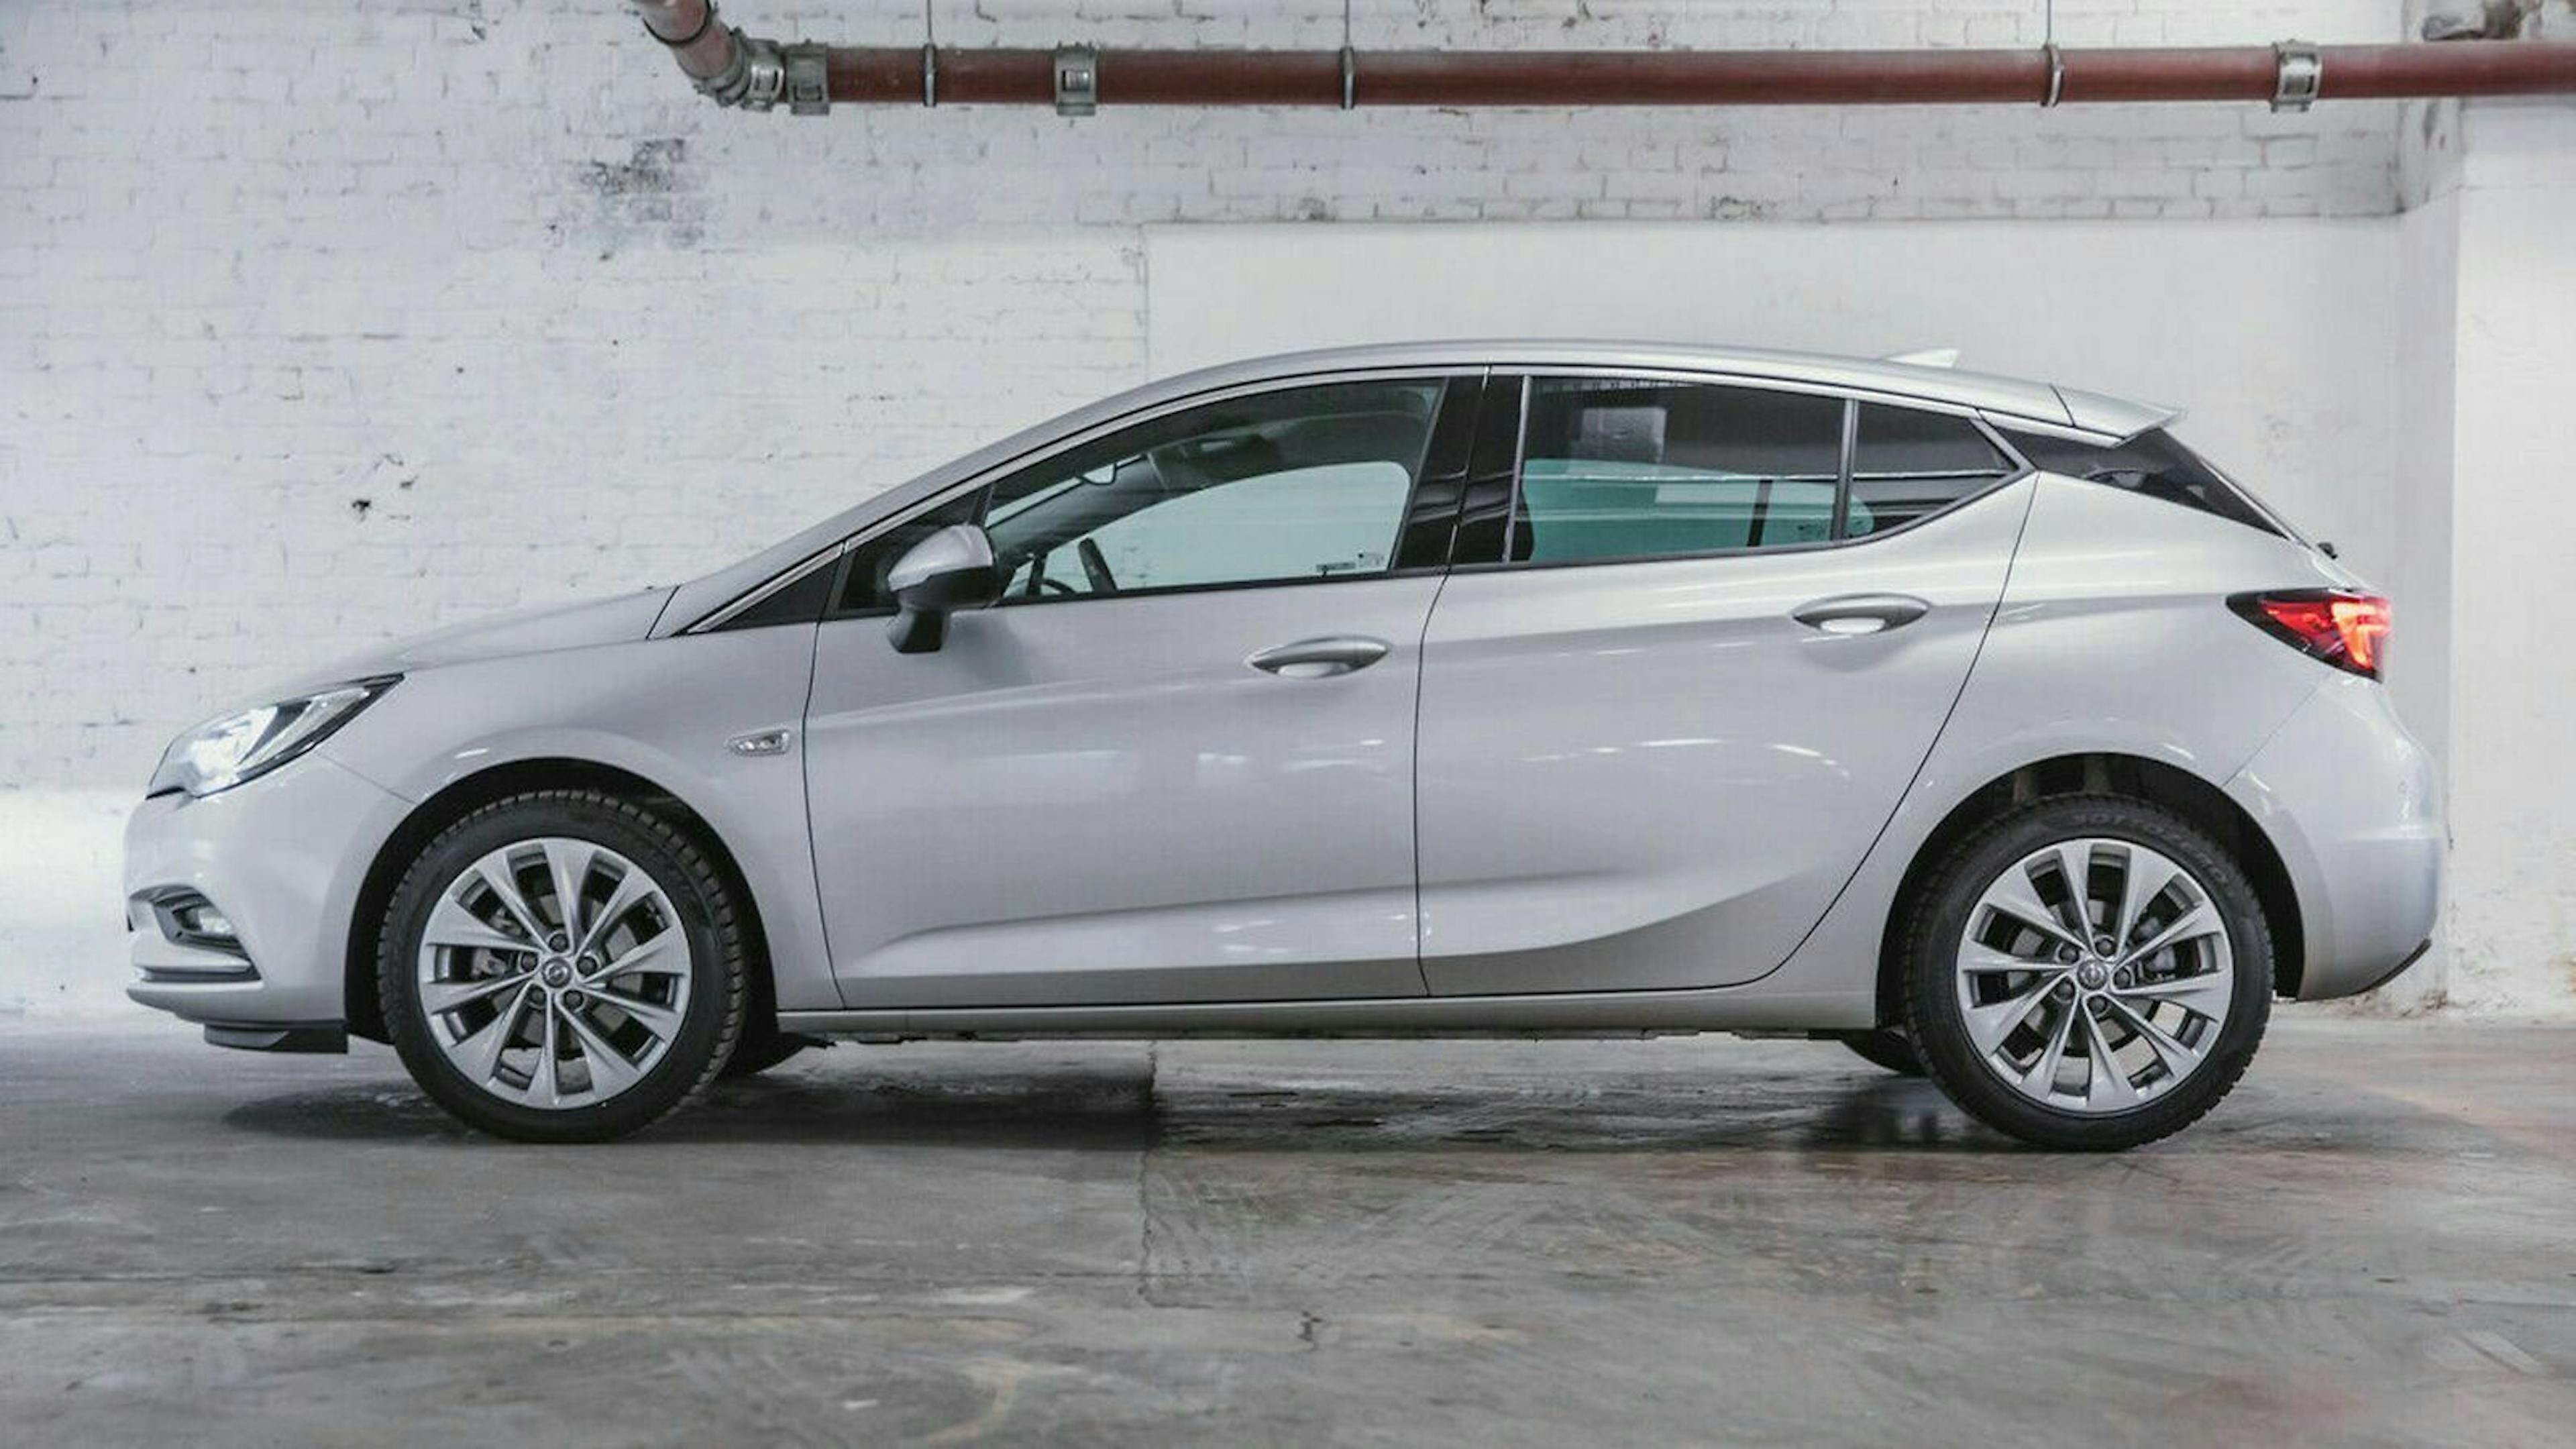 Auch im Verbrauch zeigt sich der Opel Astra stärker. Er beschränkte sich auf 6,9 Liter